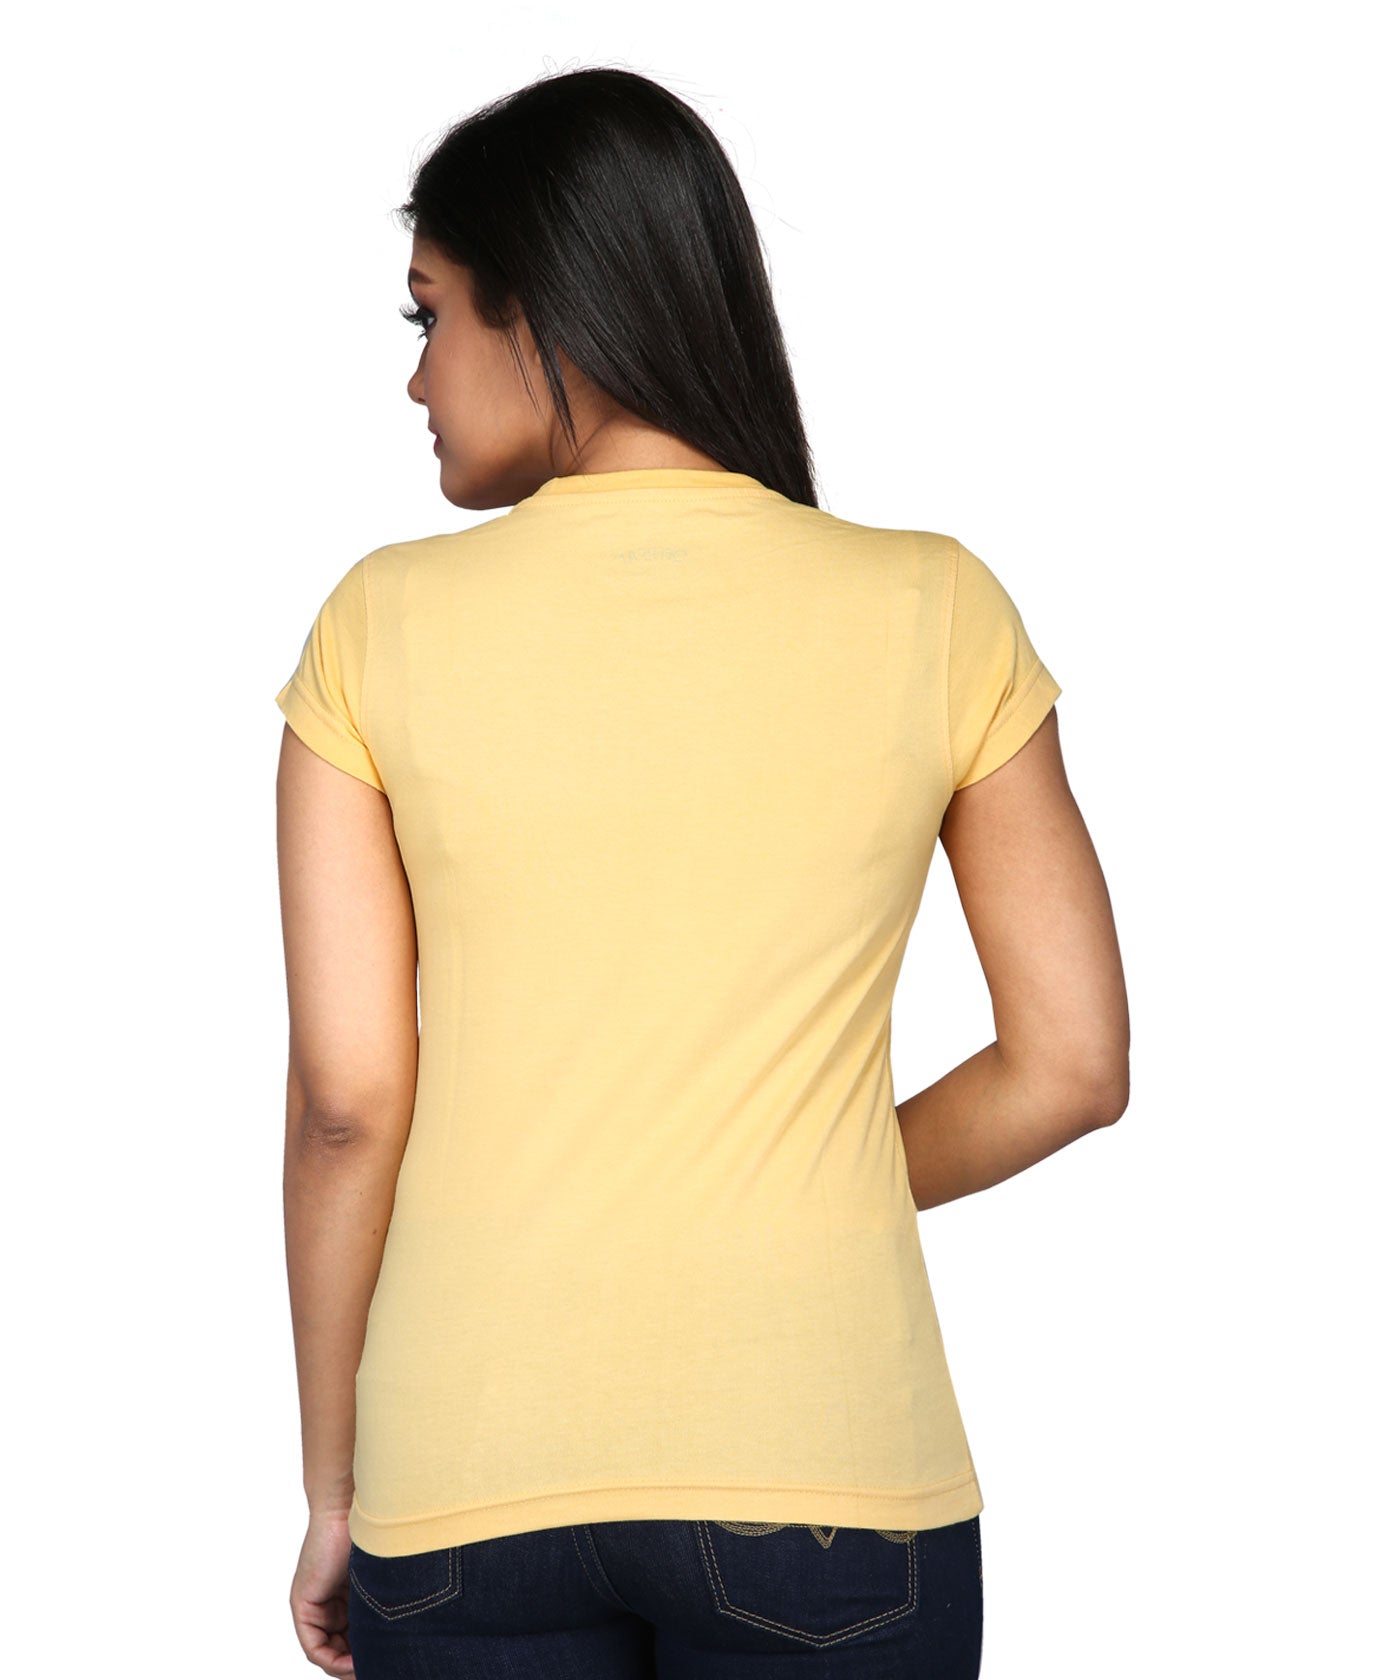 Wild - Premium Round Neck Cotton Tees for Women - Golden Yellow